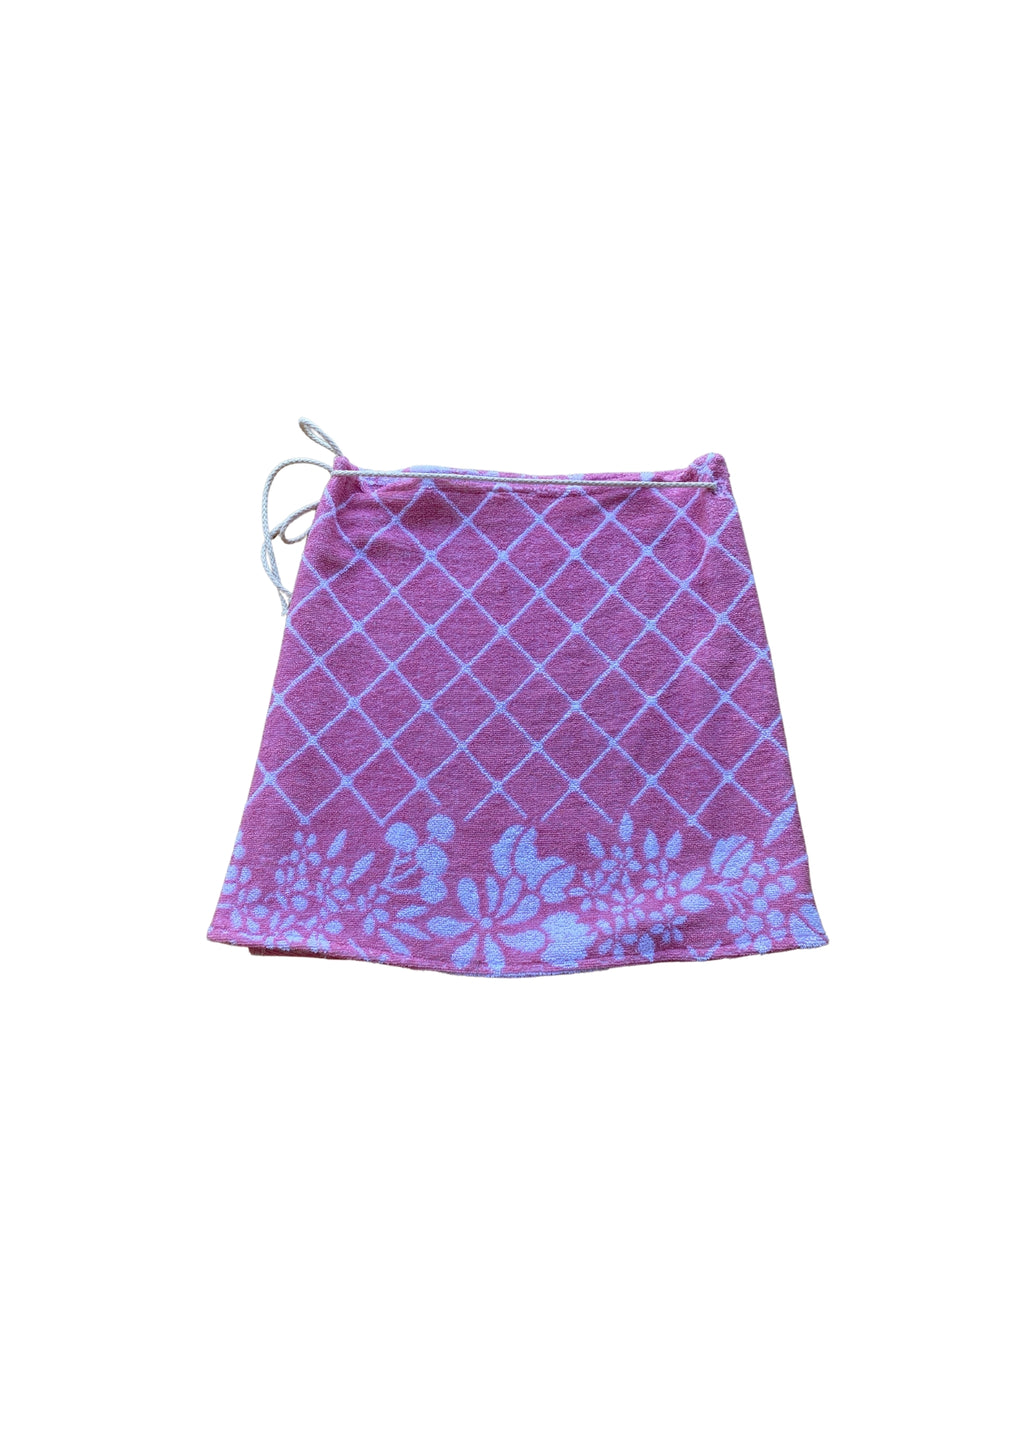 Towel Wrap Skirt - Pink Check